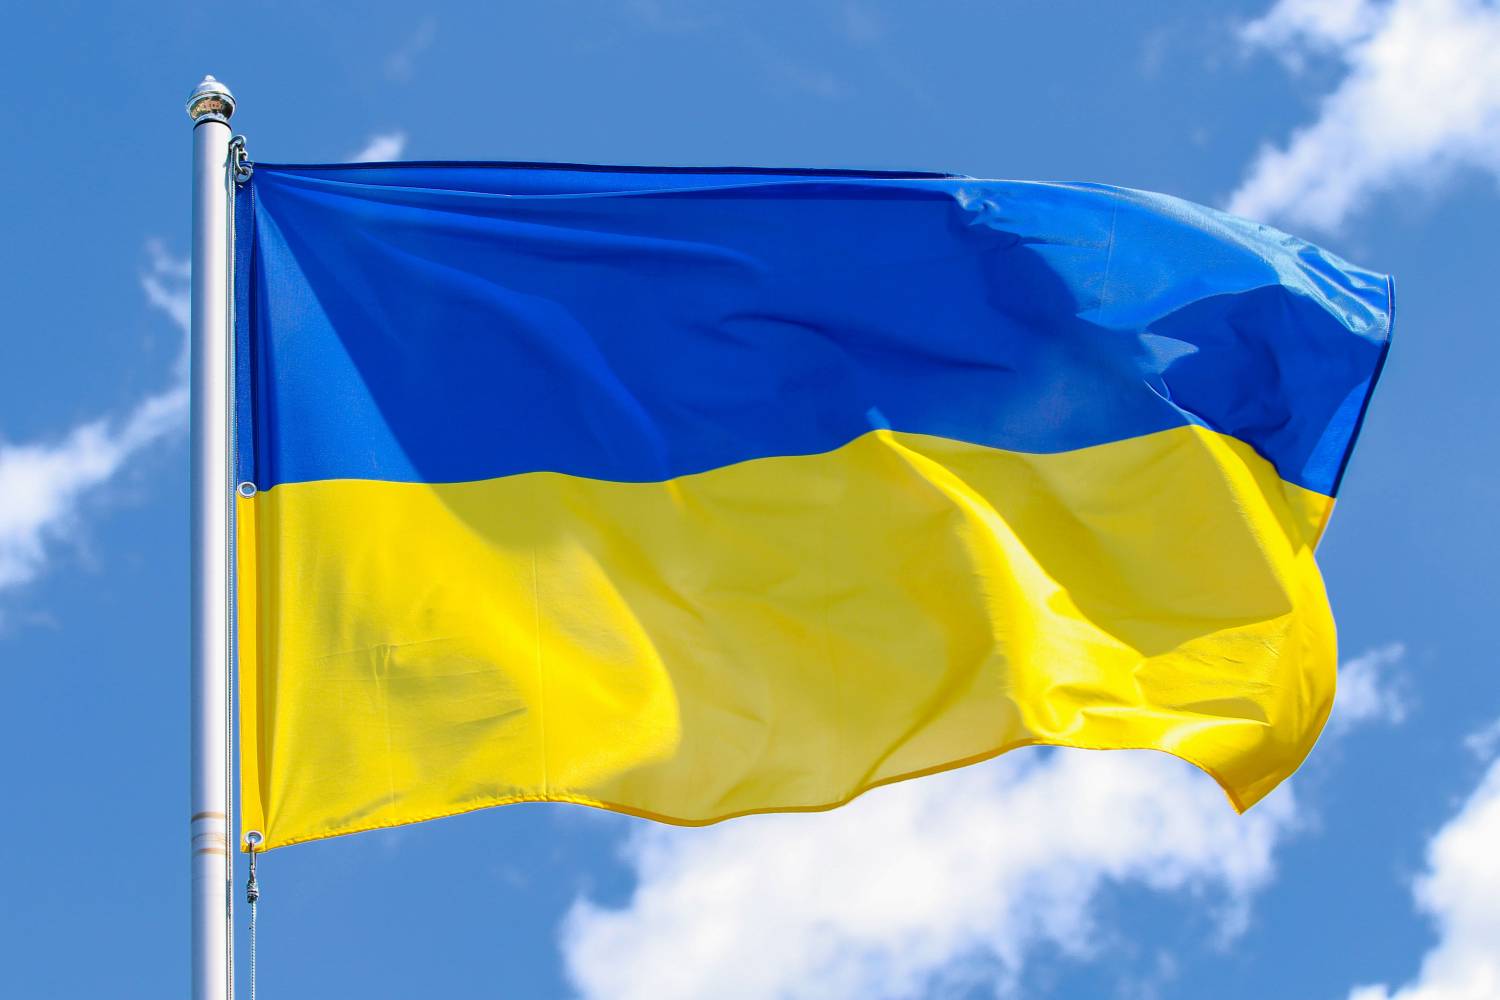 MCI | Die Unternehmerische Hochschule® solidarisiert sich mit ukrainischen Studierenden. ©Adobe Stock